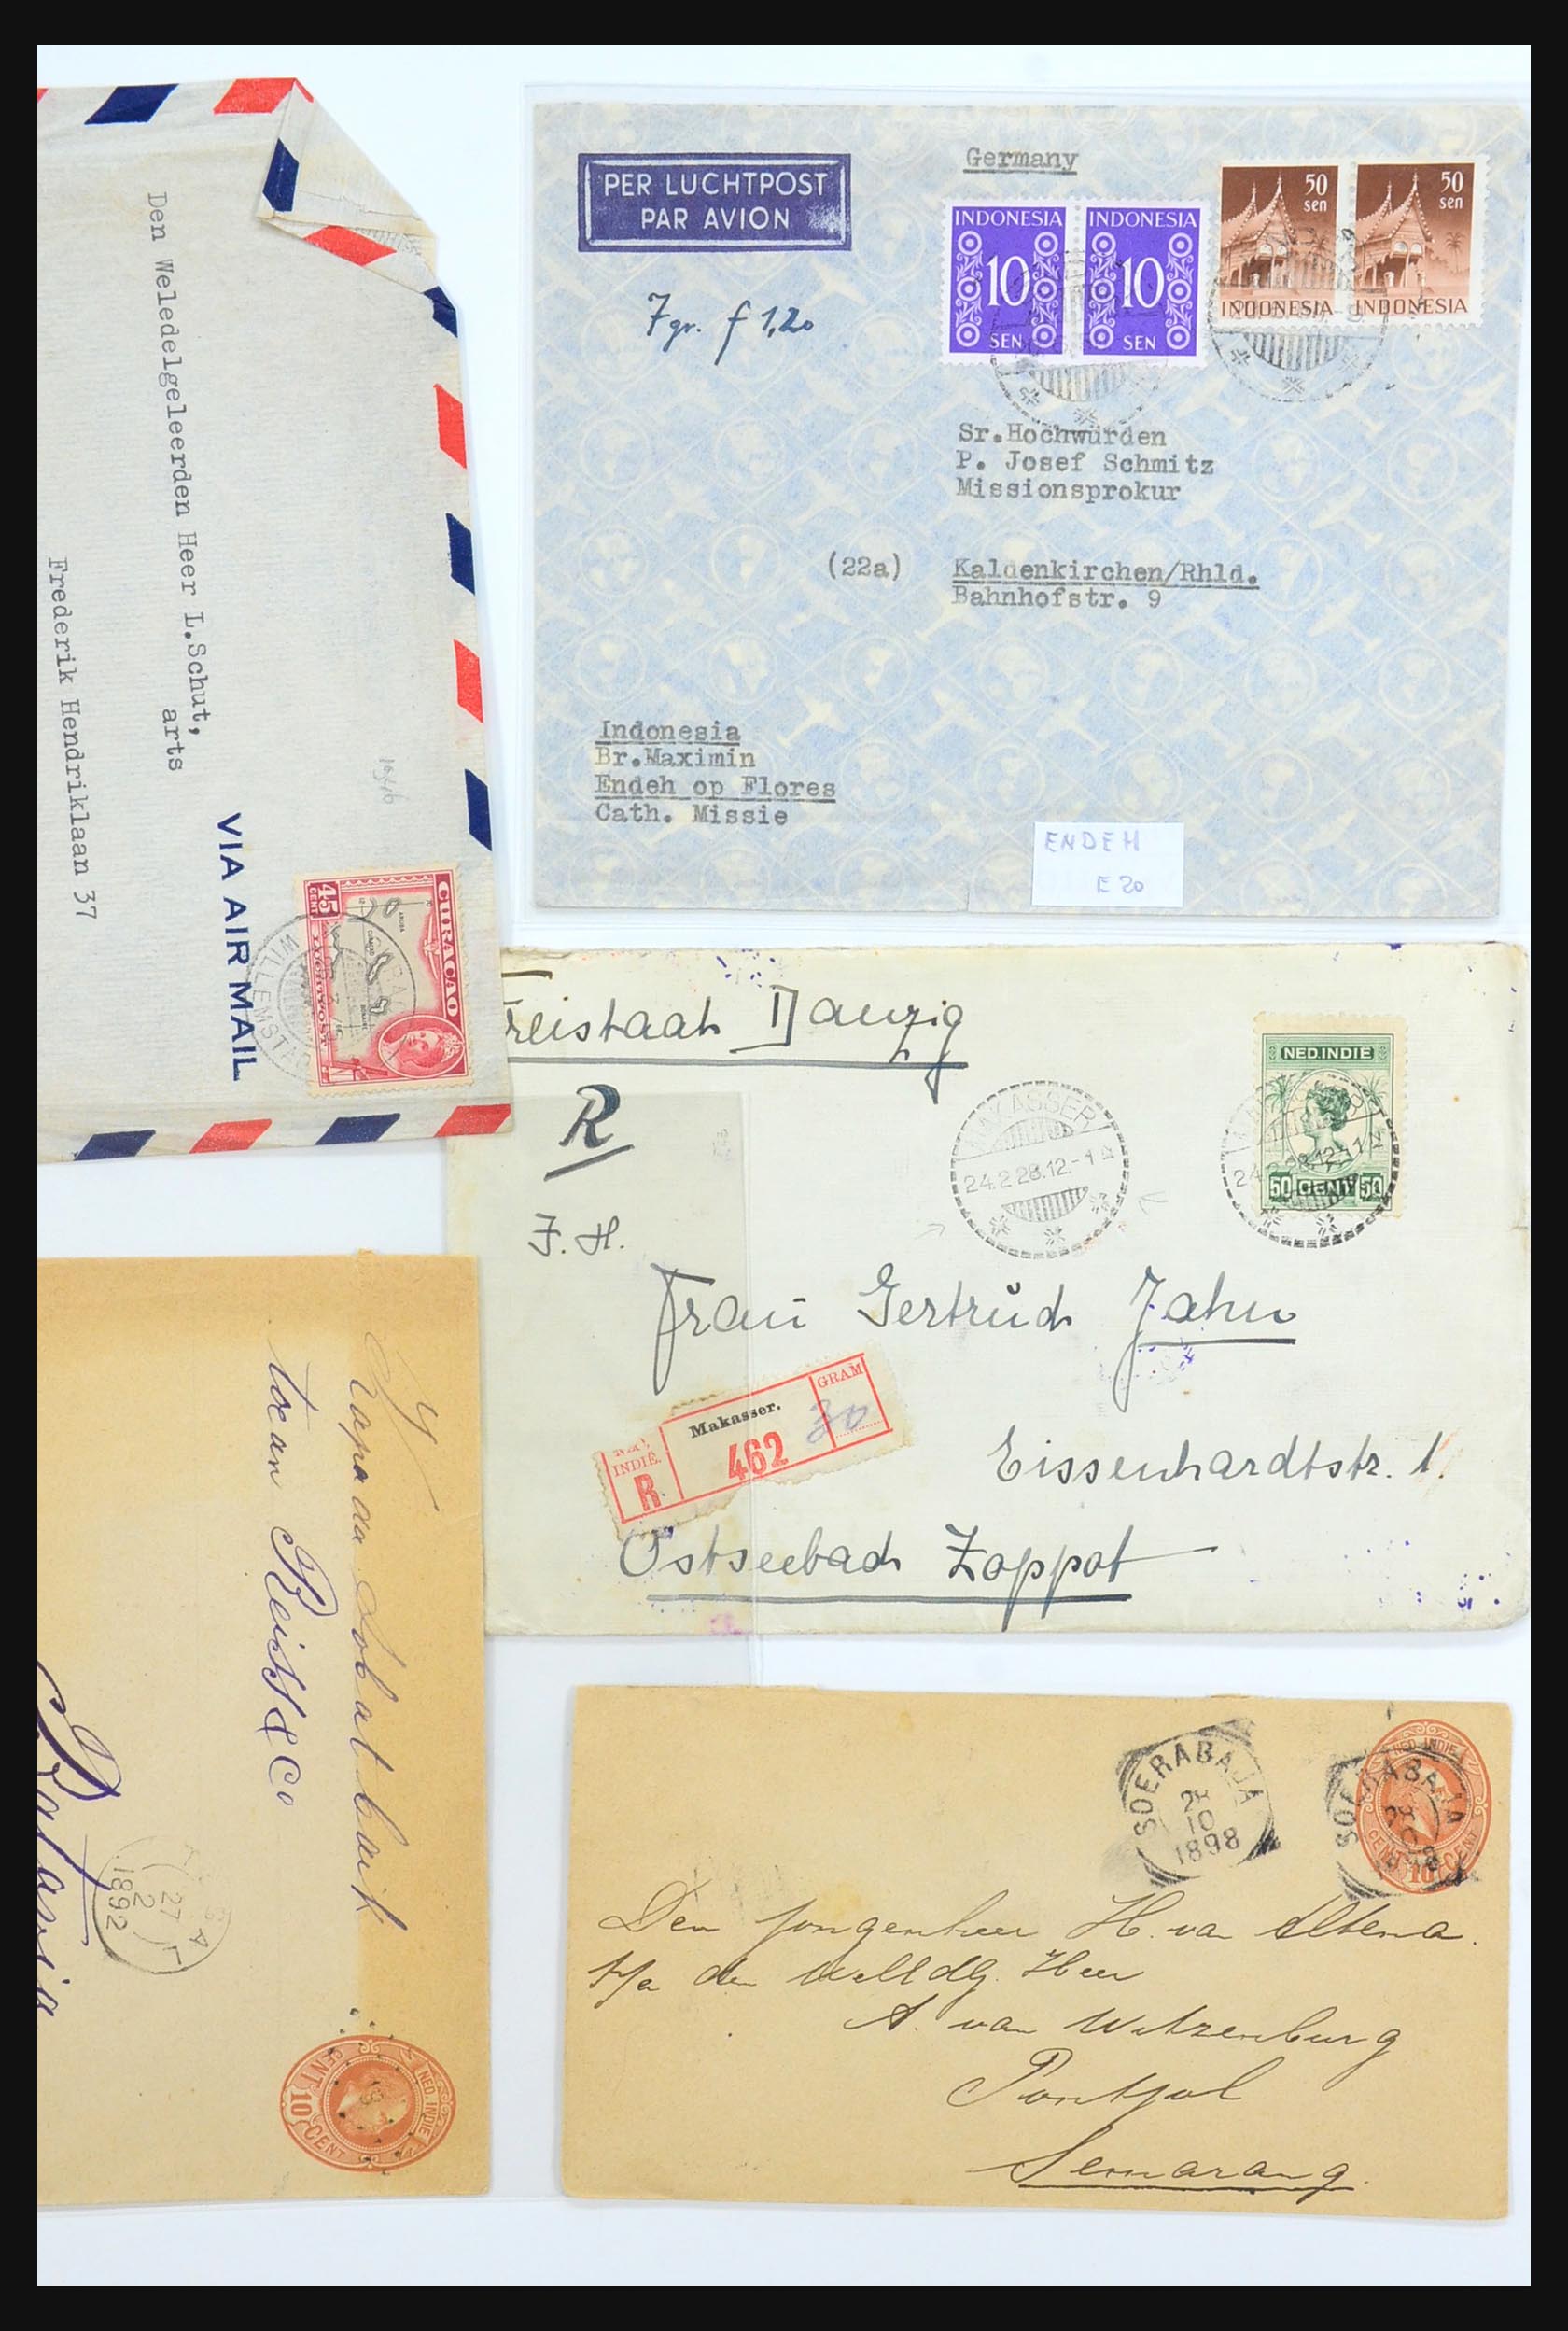 31361 035 - 31361 Nederlands Indië brieven 1880-1950.